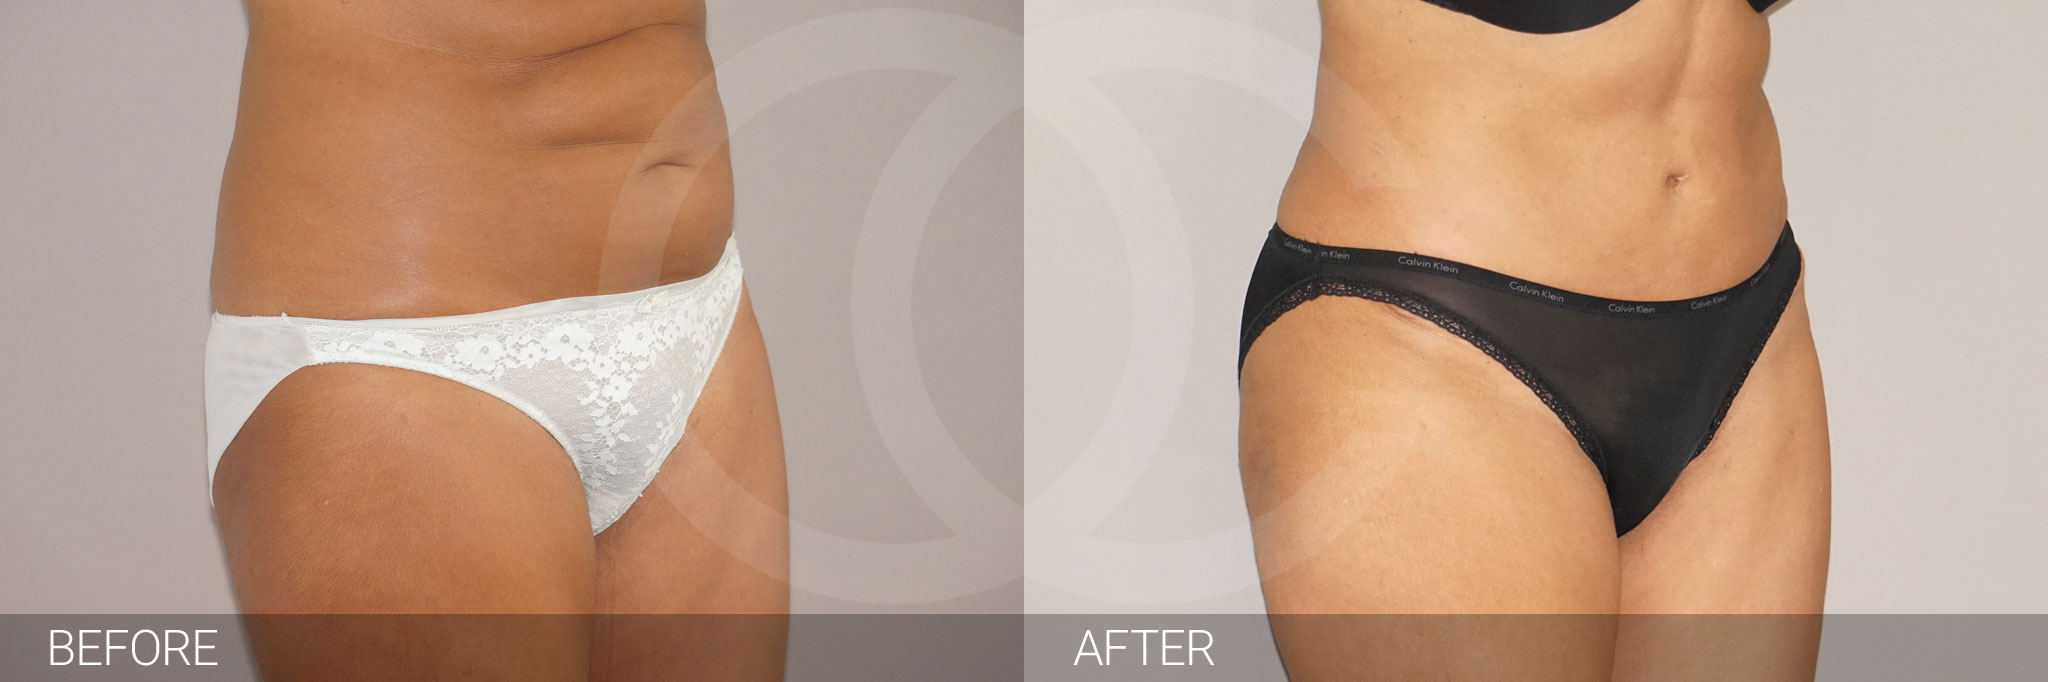 Antes y después Abdominoplastia reducción abdominal fotos reales de pacientes 9.2 | Ocean Clinic Marbella Madrid